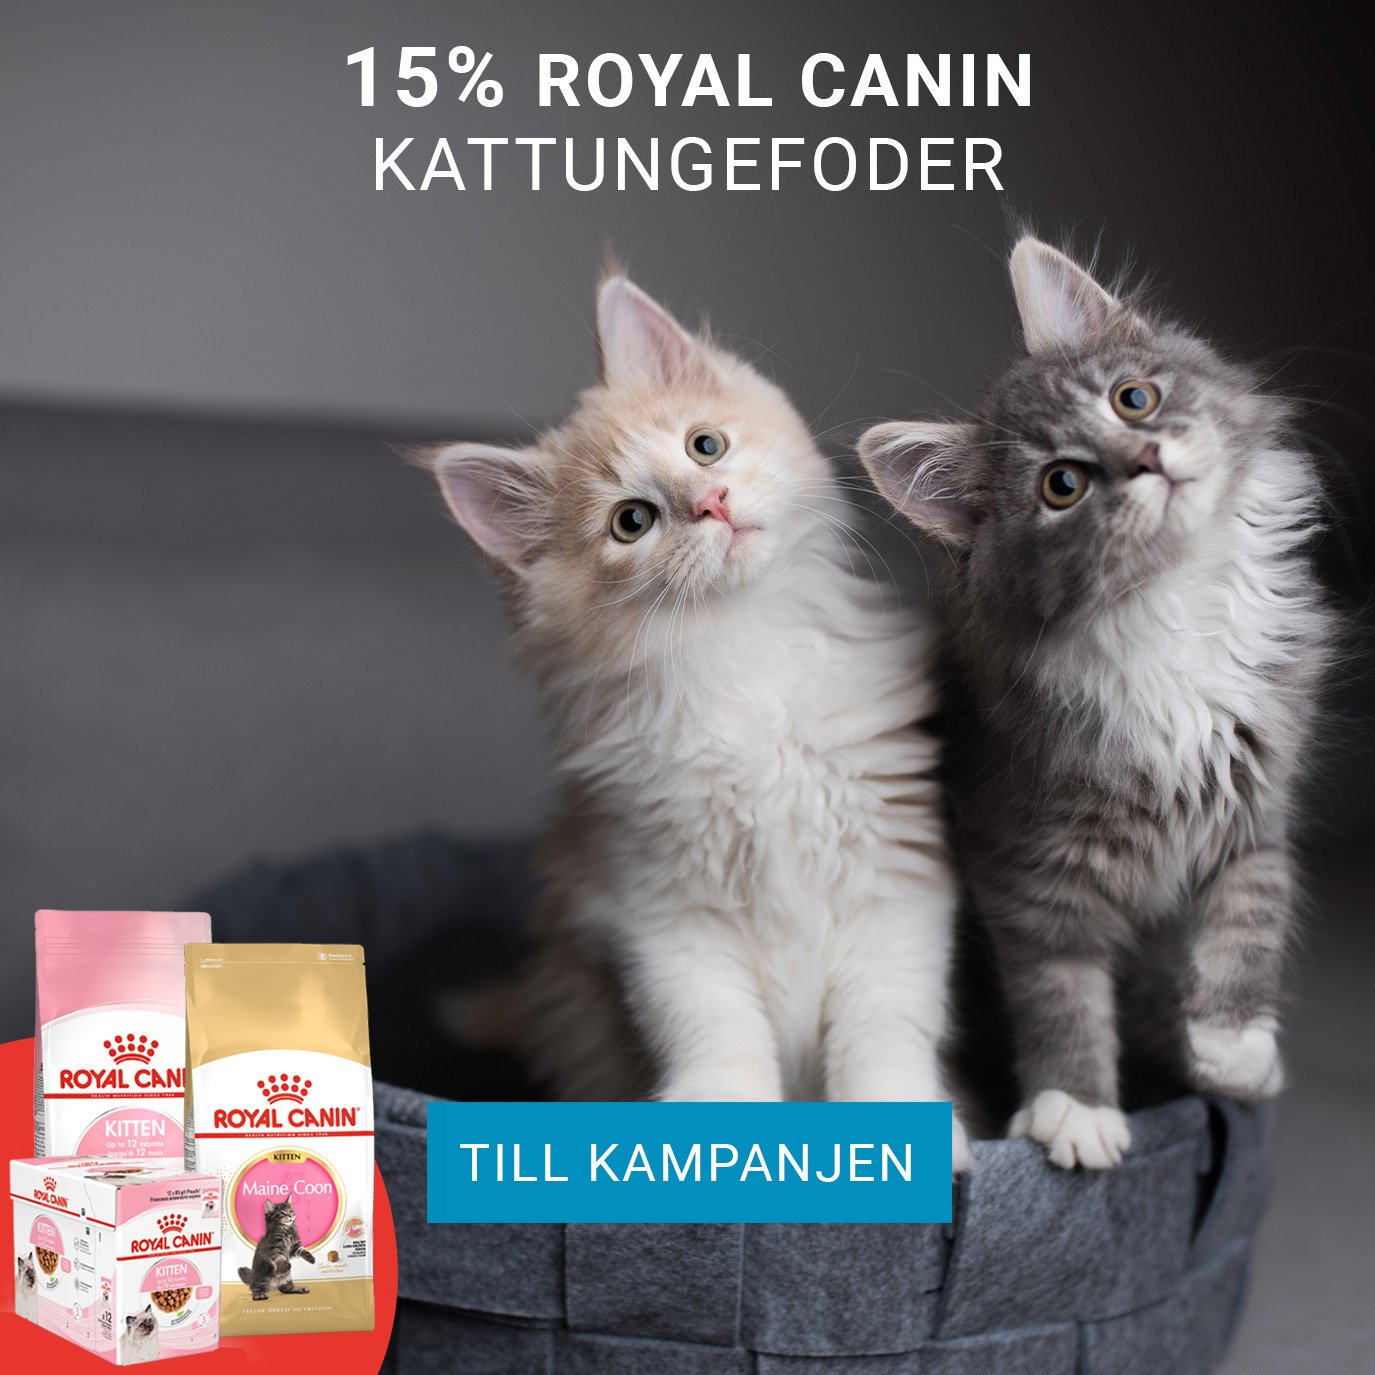 Kampanj Royal Canin kattunge